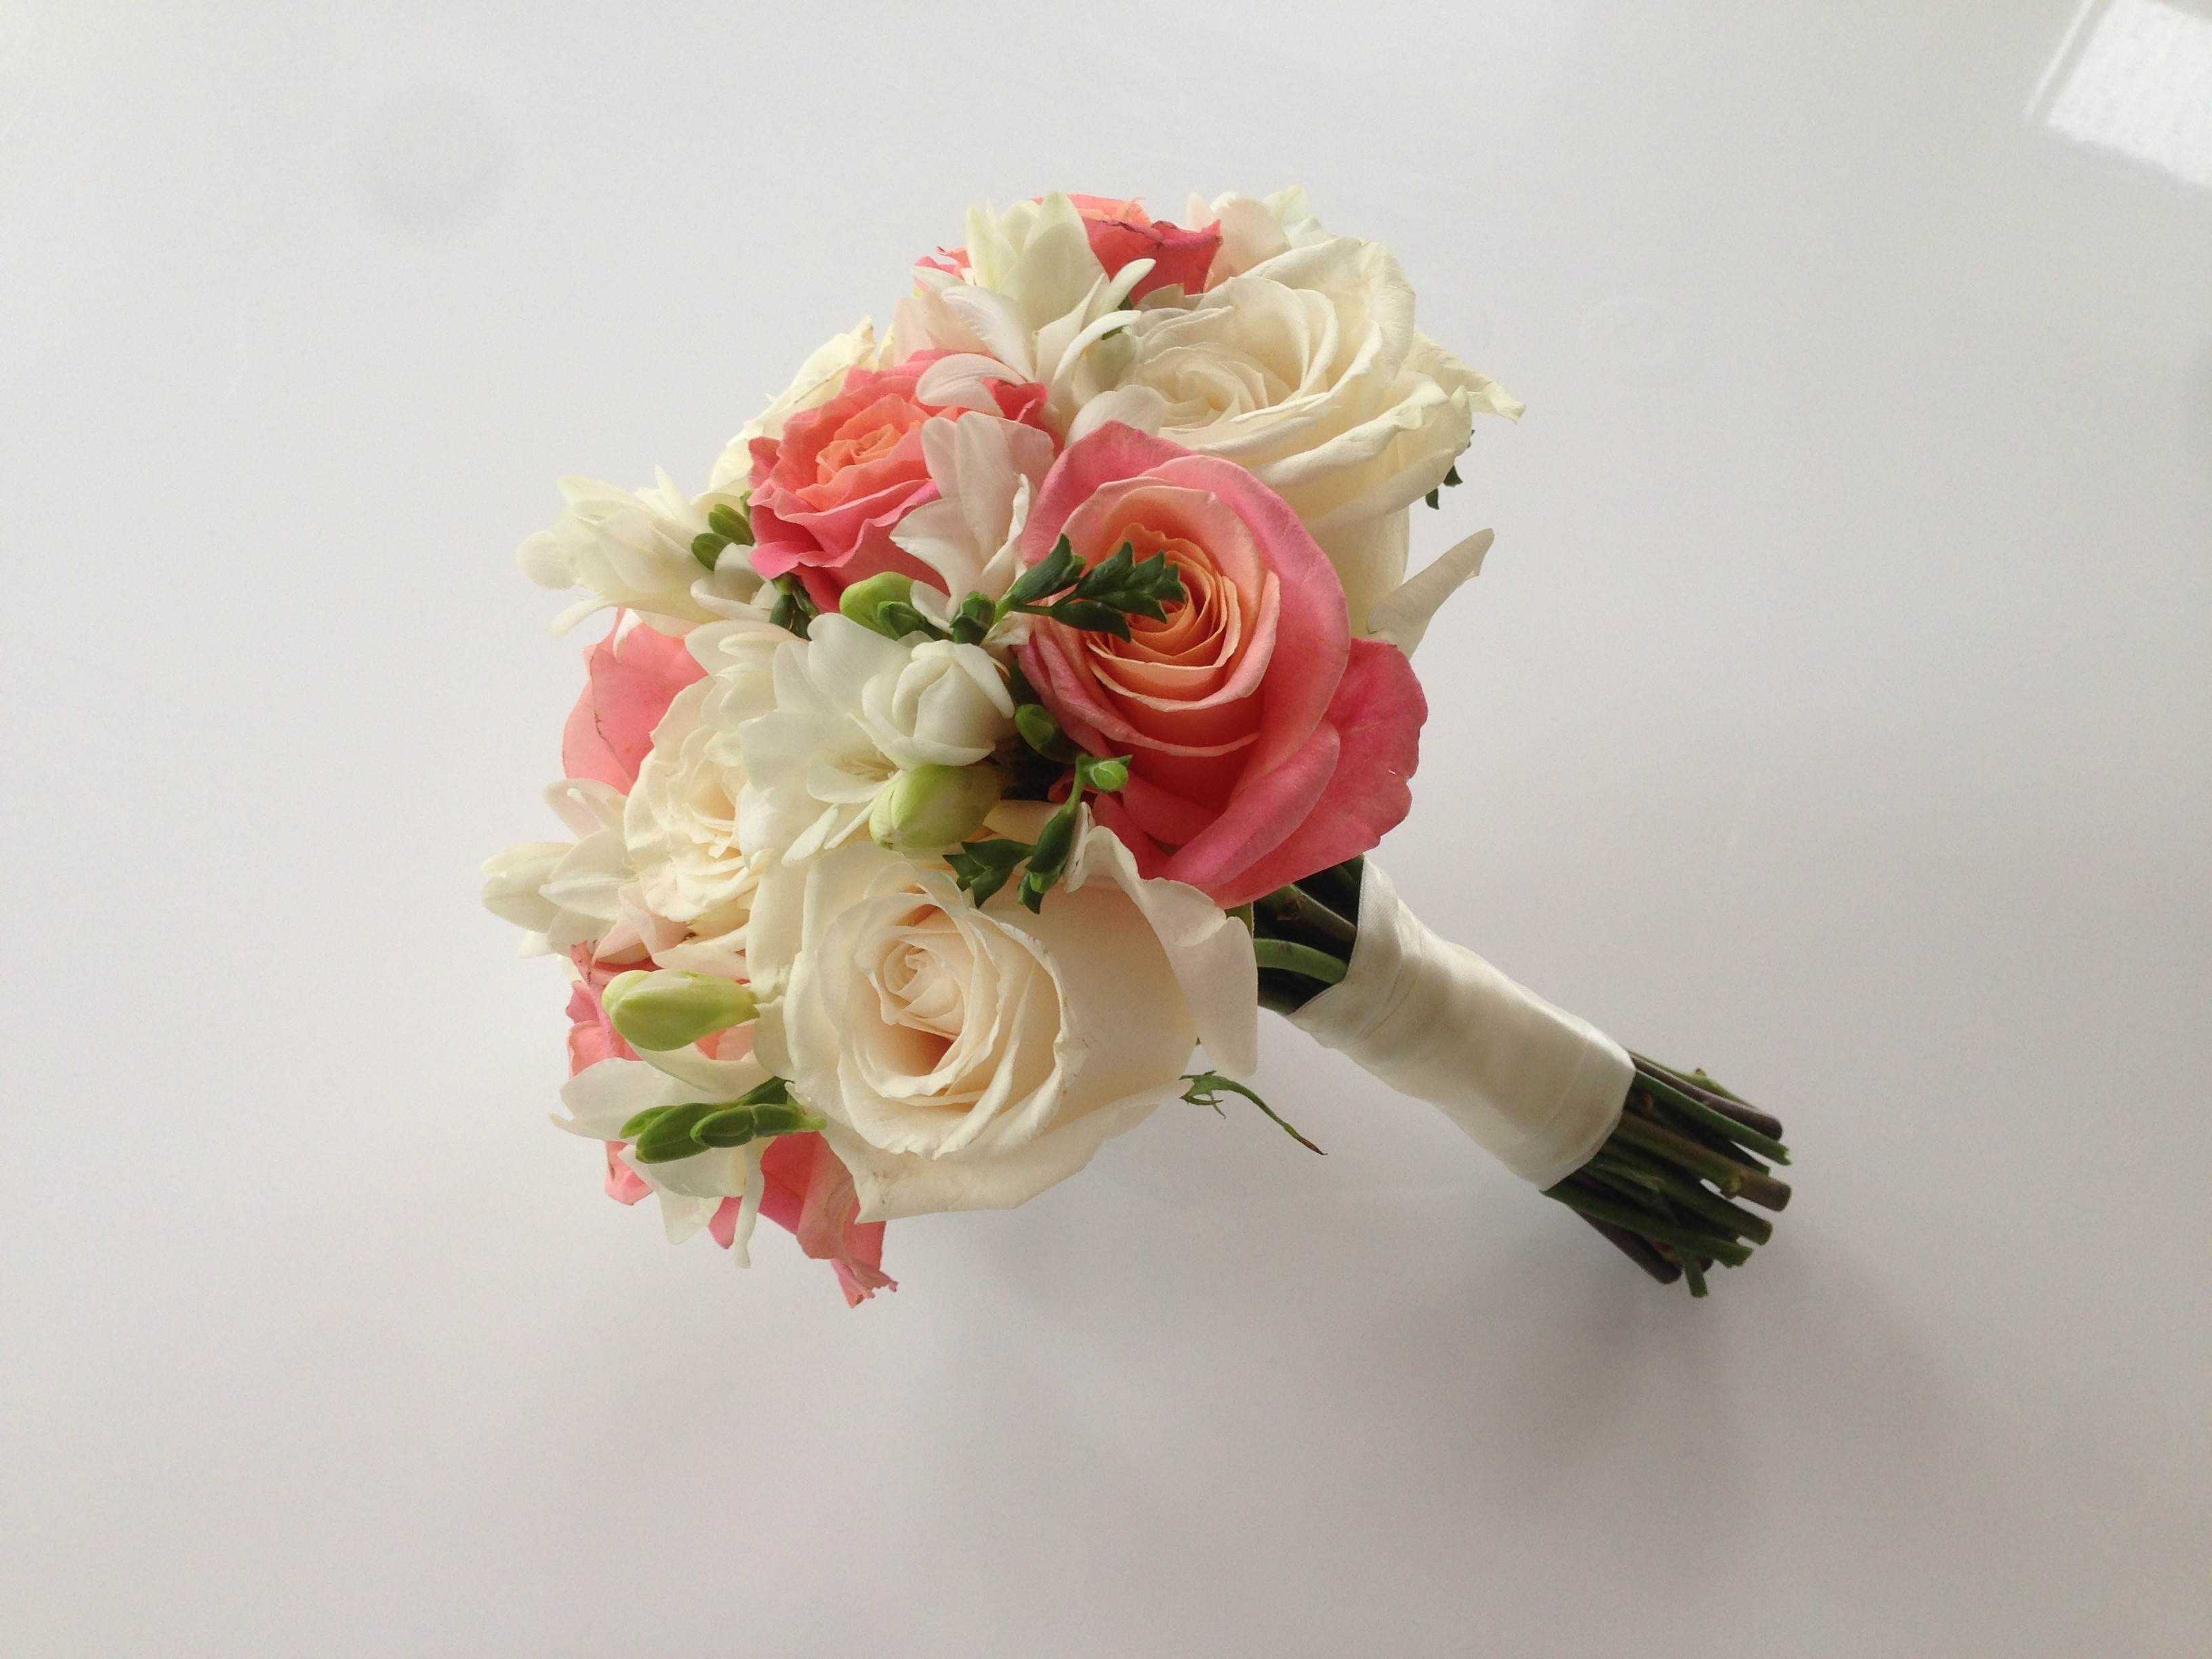 Свадебный букет из хризантем (59 фото): букеты для невесты из белых кустовых хризантем с розами, синими альстромериями и герберами. значение цветов